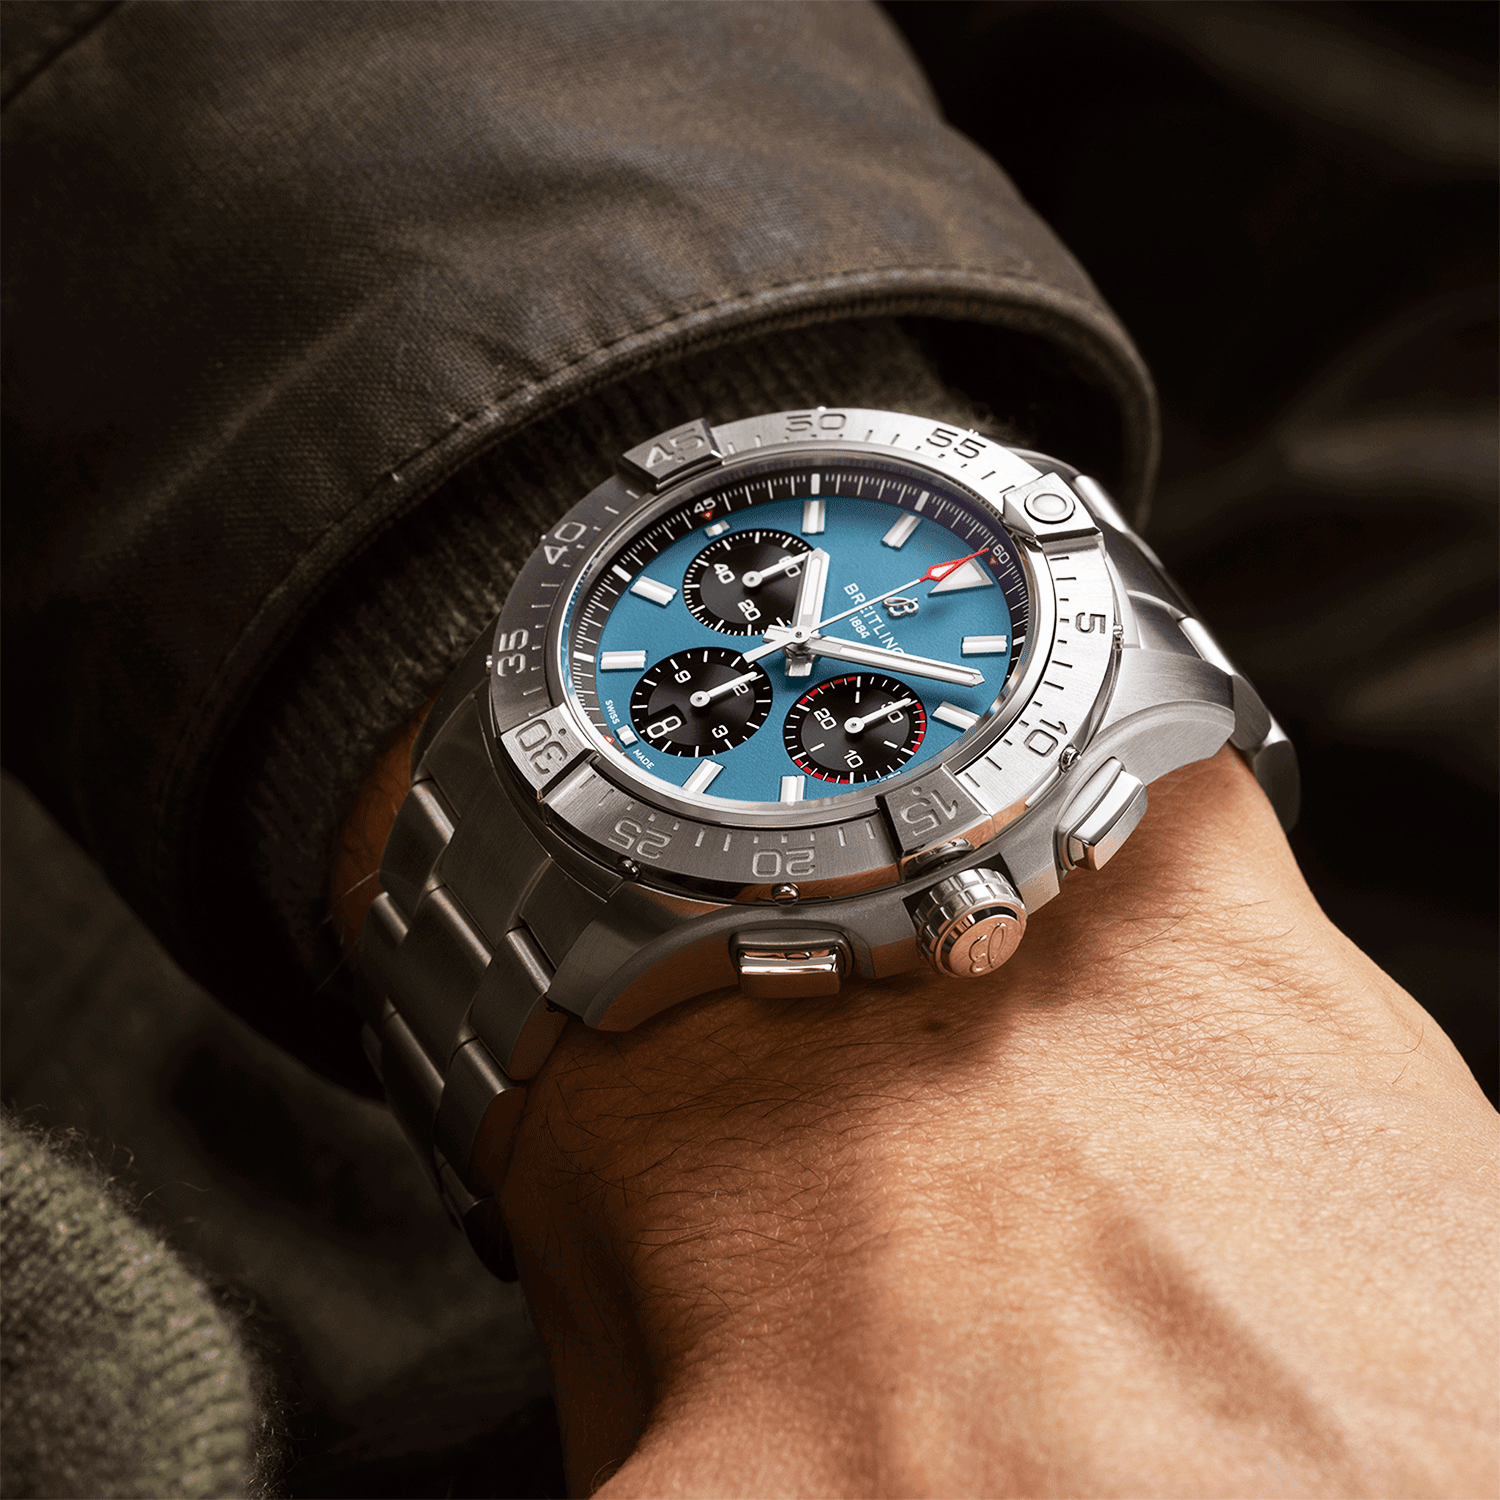 Avenger 44mm Blue Dial Automatic Chronograph Bracelet Watch